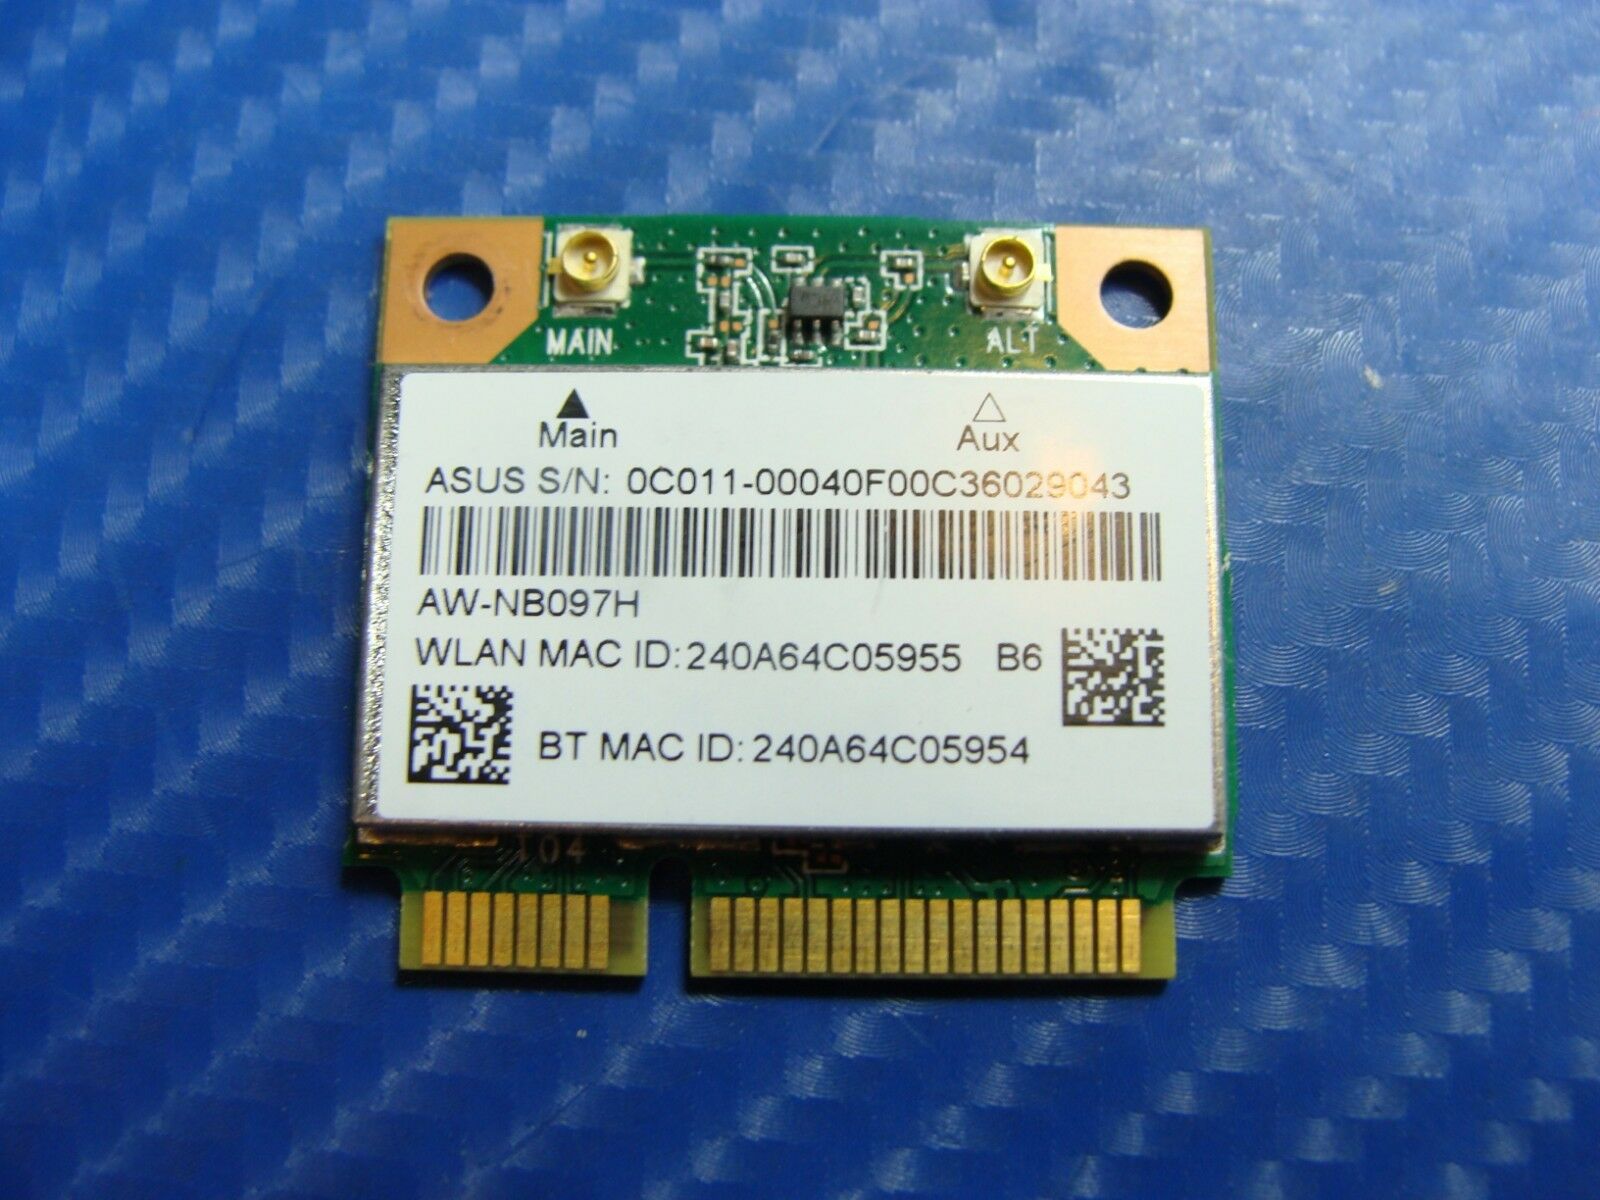 Asus X551CA-HCL1201L 15.6